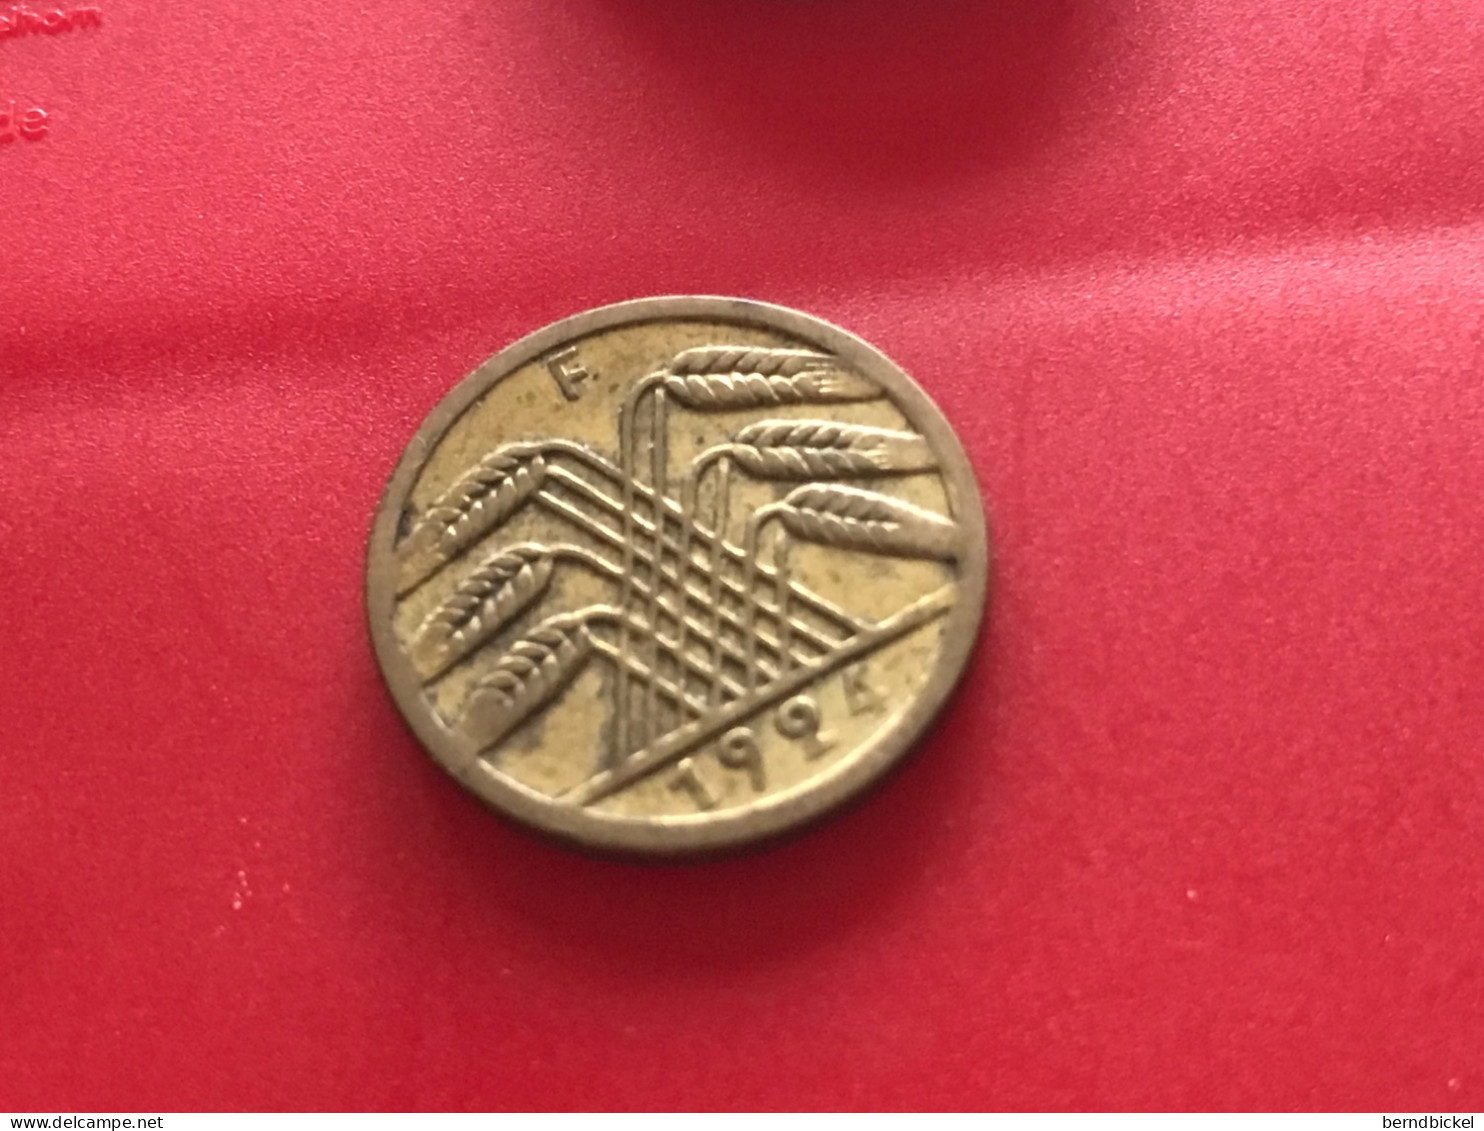 Münze Münzen Umlaufmünze Deutschland Deutsches Reich 5 Pfennig 1924 Münzzeichen F - 5 Rentenpfennig & 5 Reichspfennig